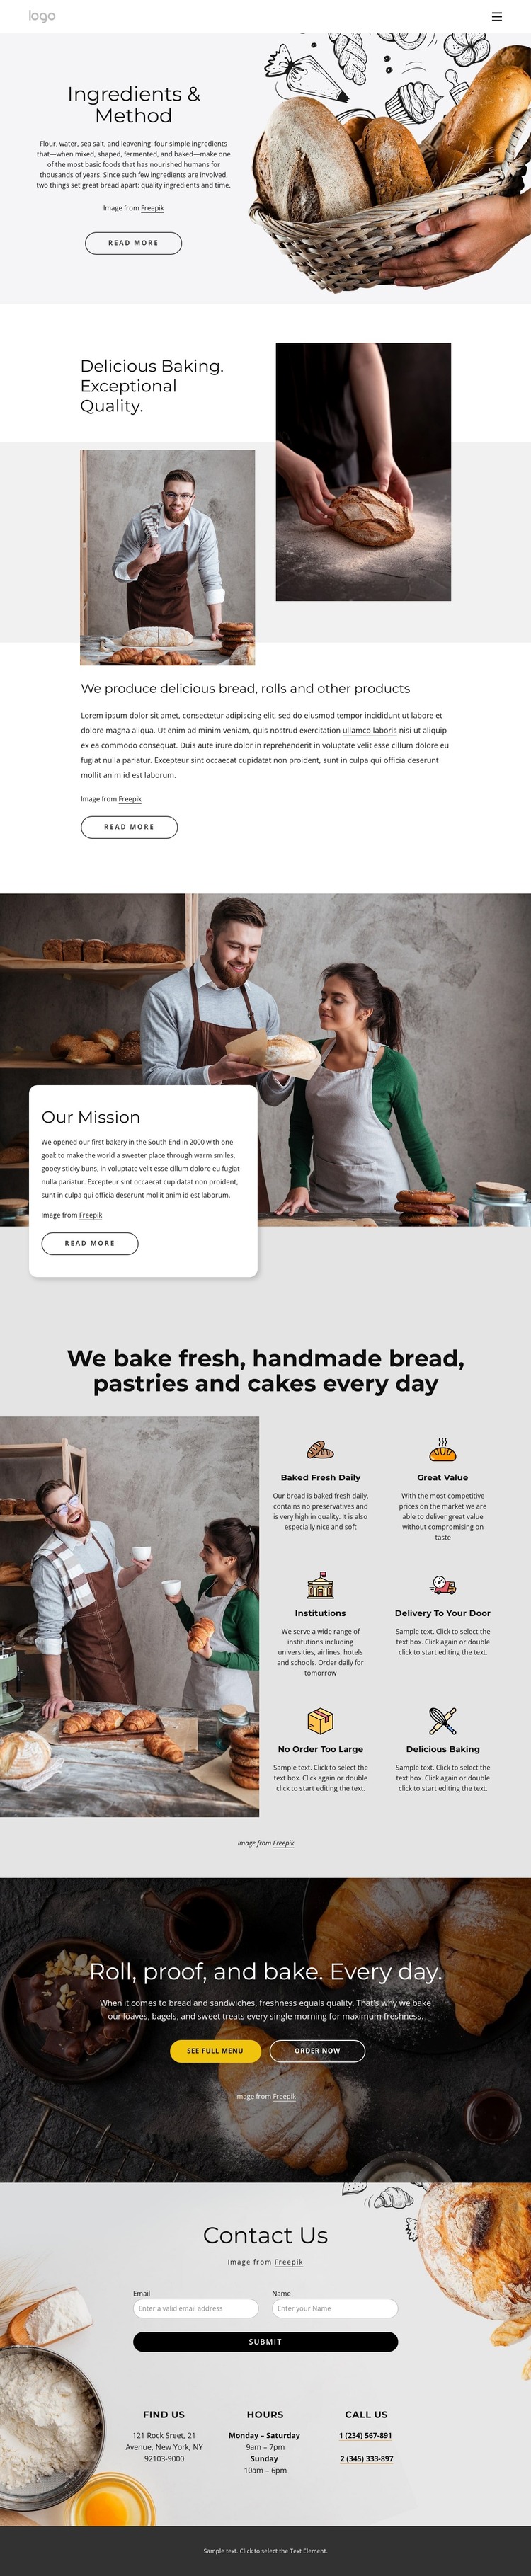 We bake handmade bread WordPress Theme